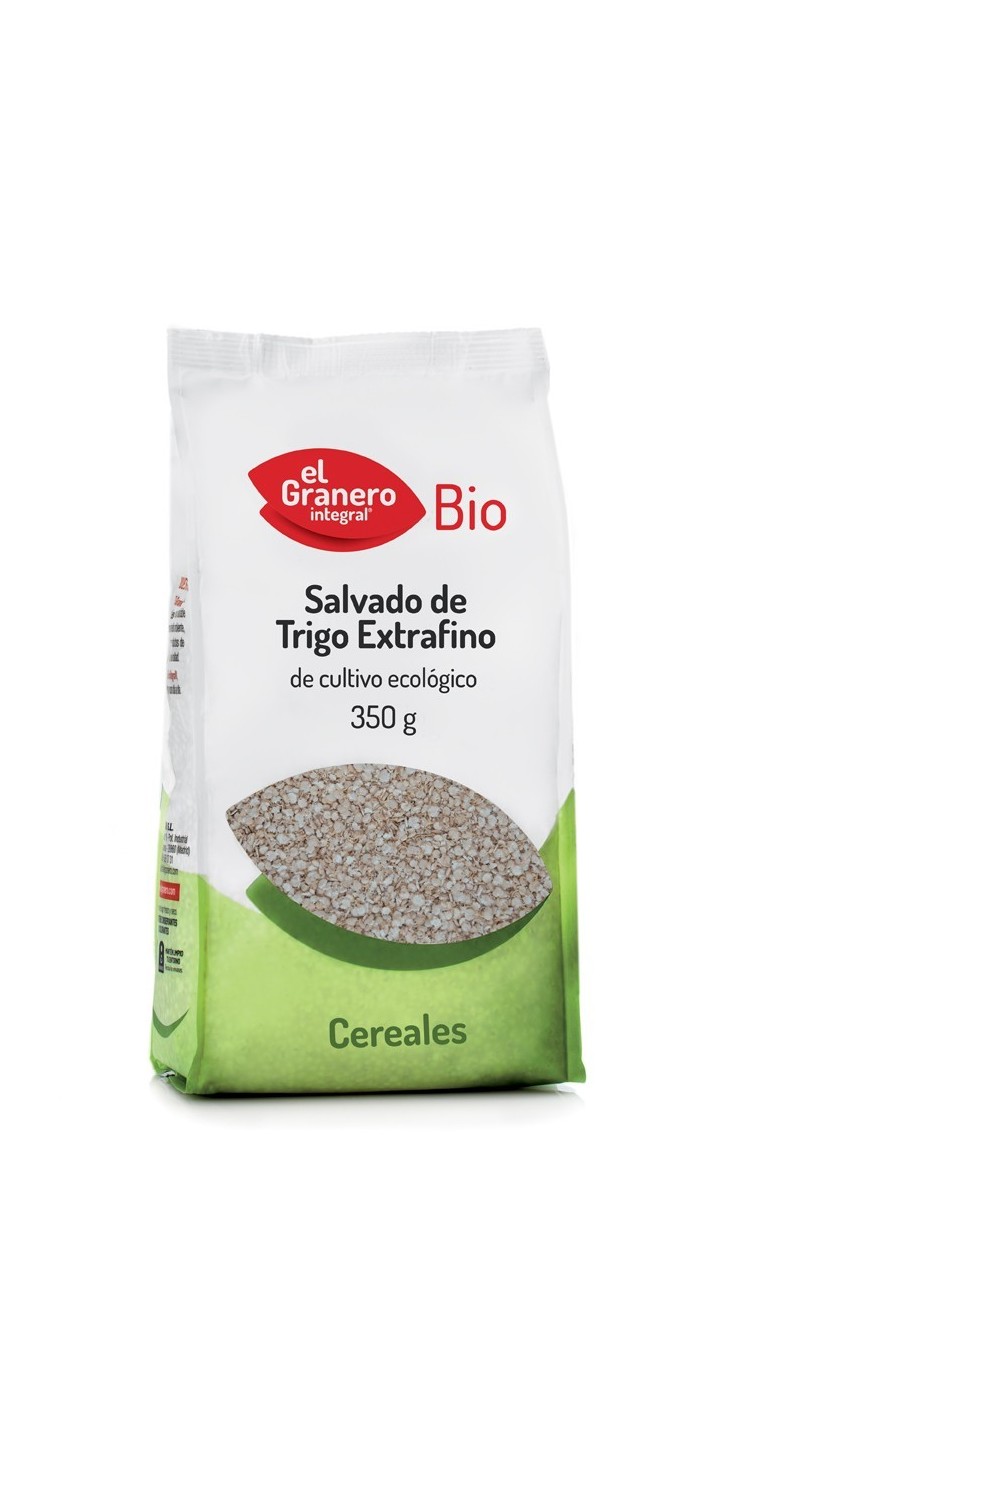 Granero Salvado De Trigo Extrafino Bio 350g